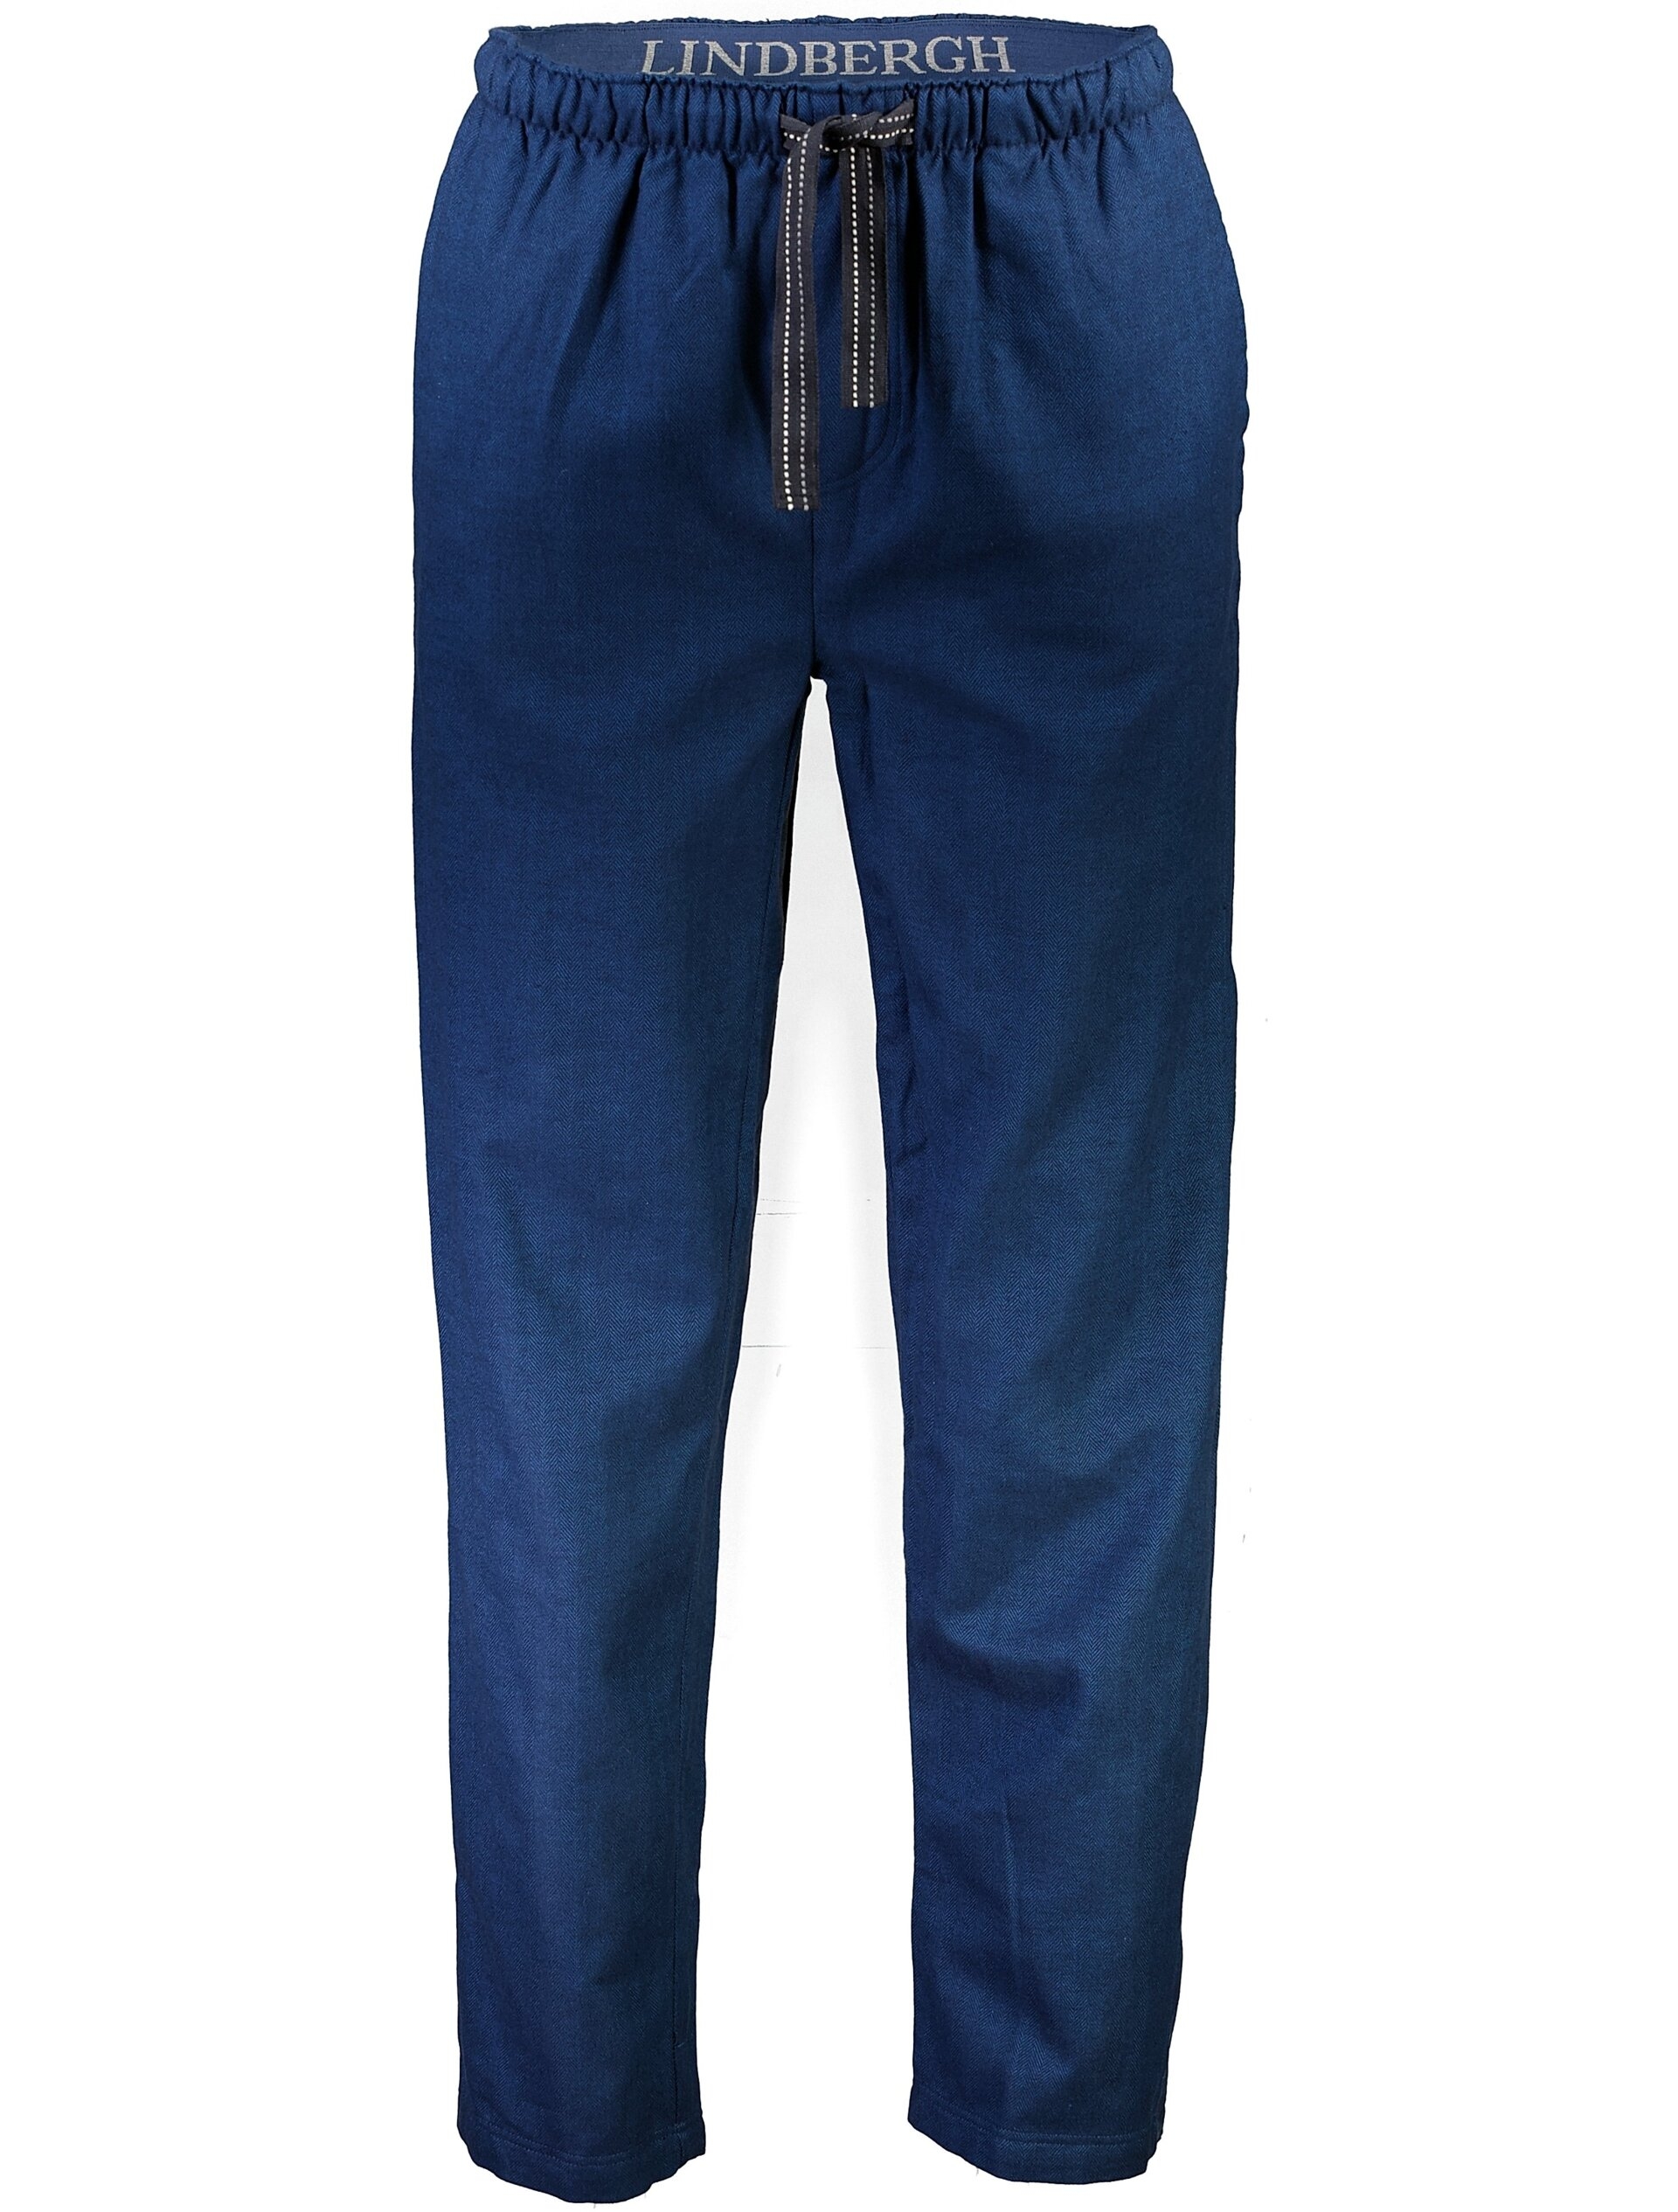 Lindbergh Pyjamas blauw / navy